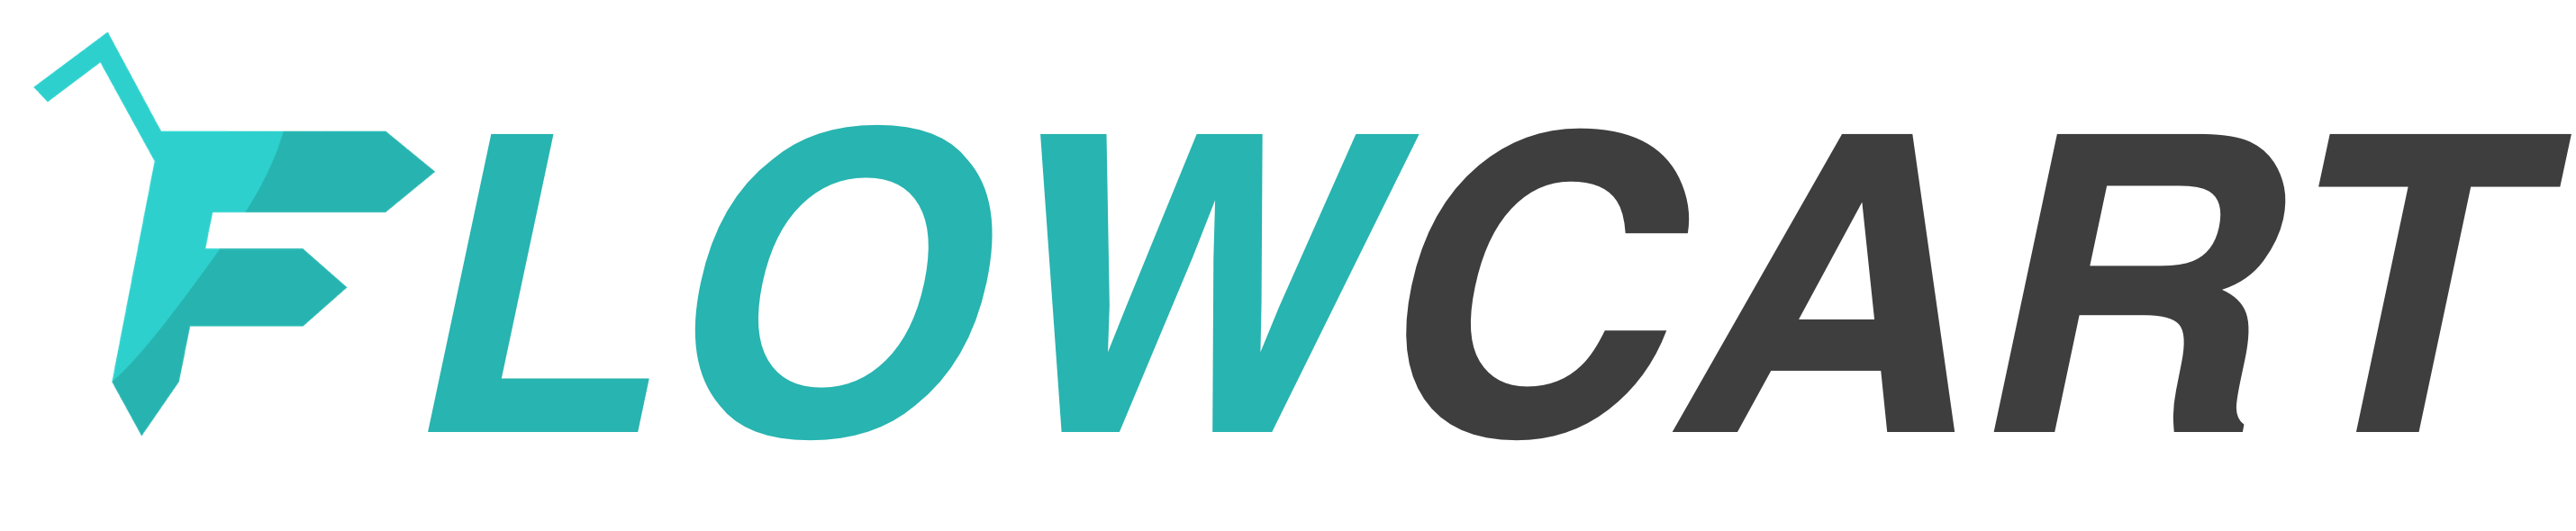 Flowcart Logo